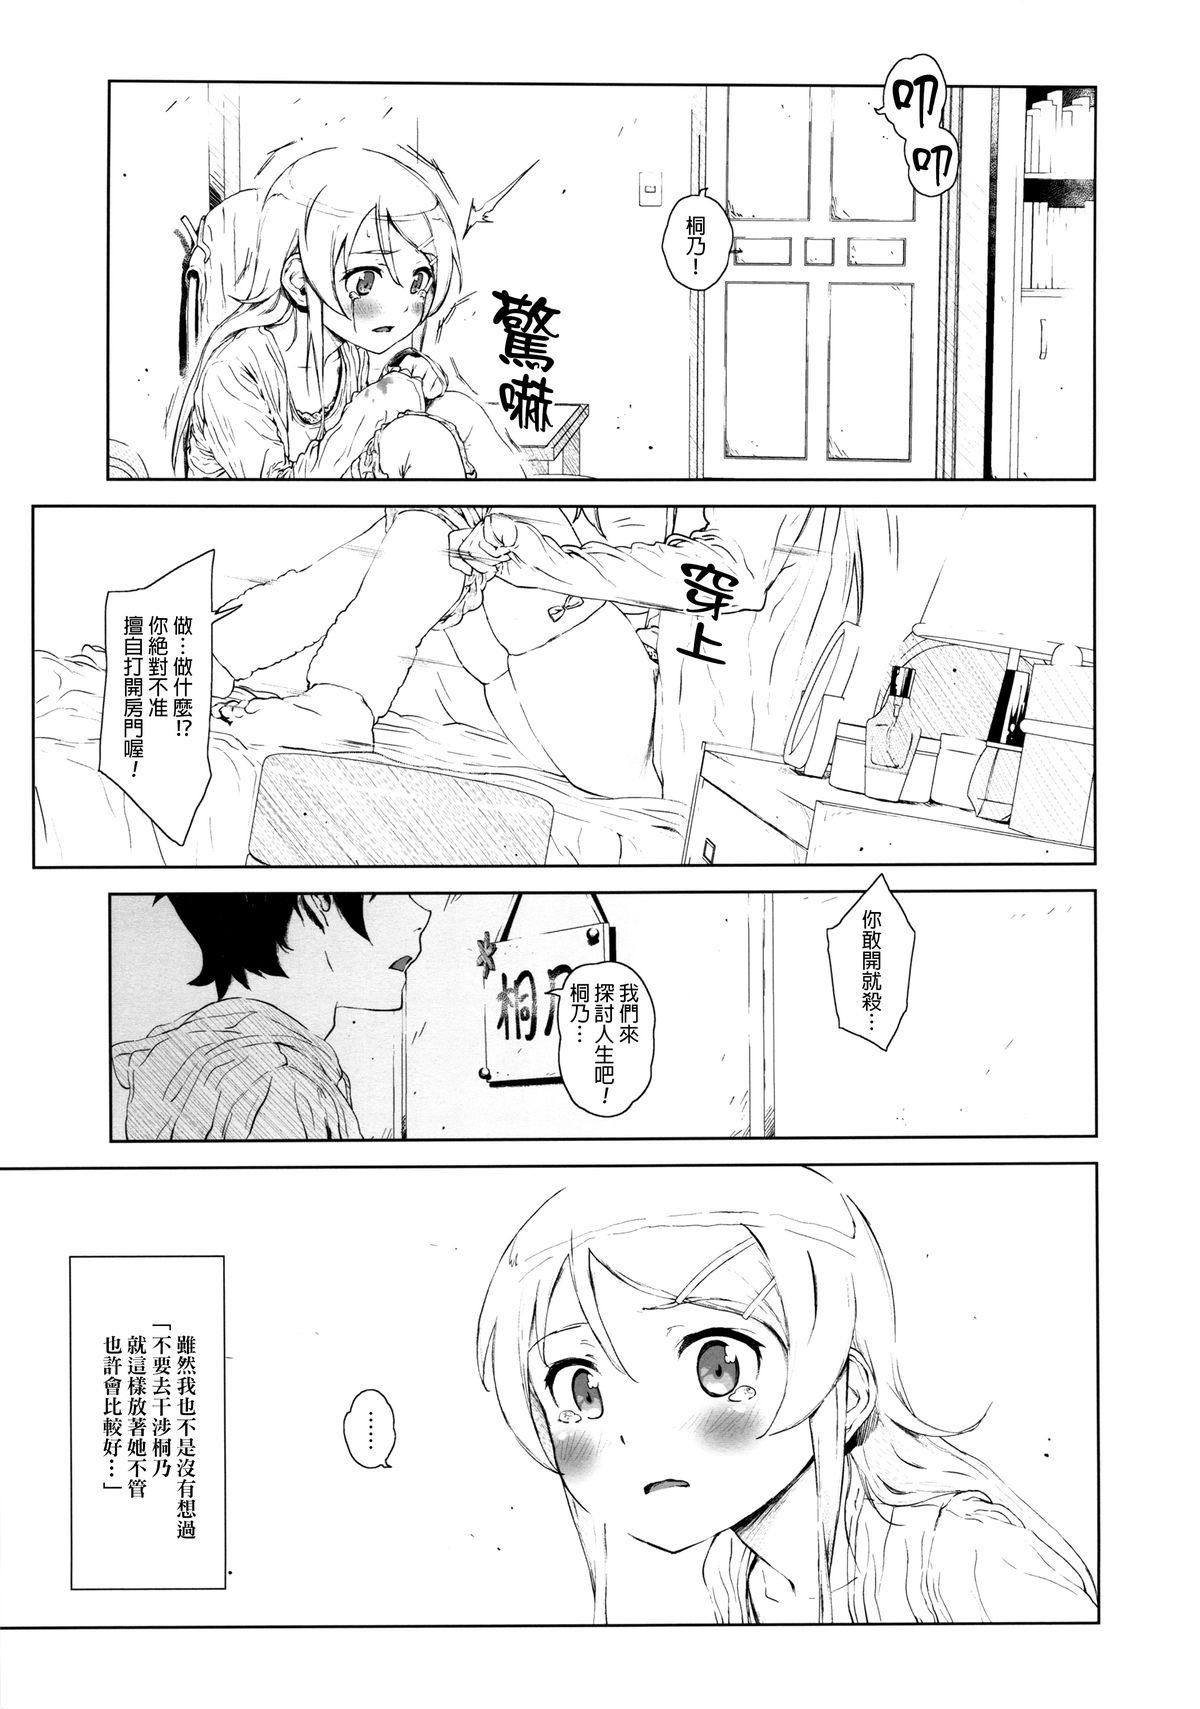 Deutsch Hoshikuzu Namida 2 - Ore no imouto ga konna ni kawaii wake ga nai HD - Page 12